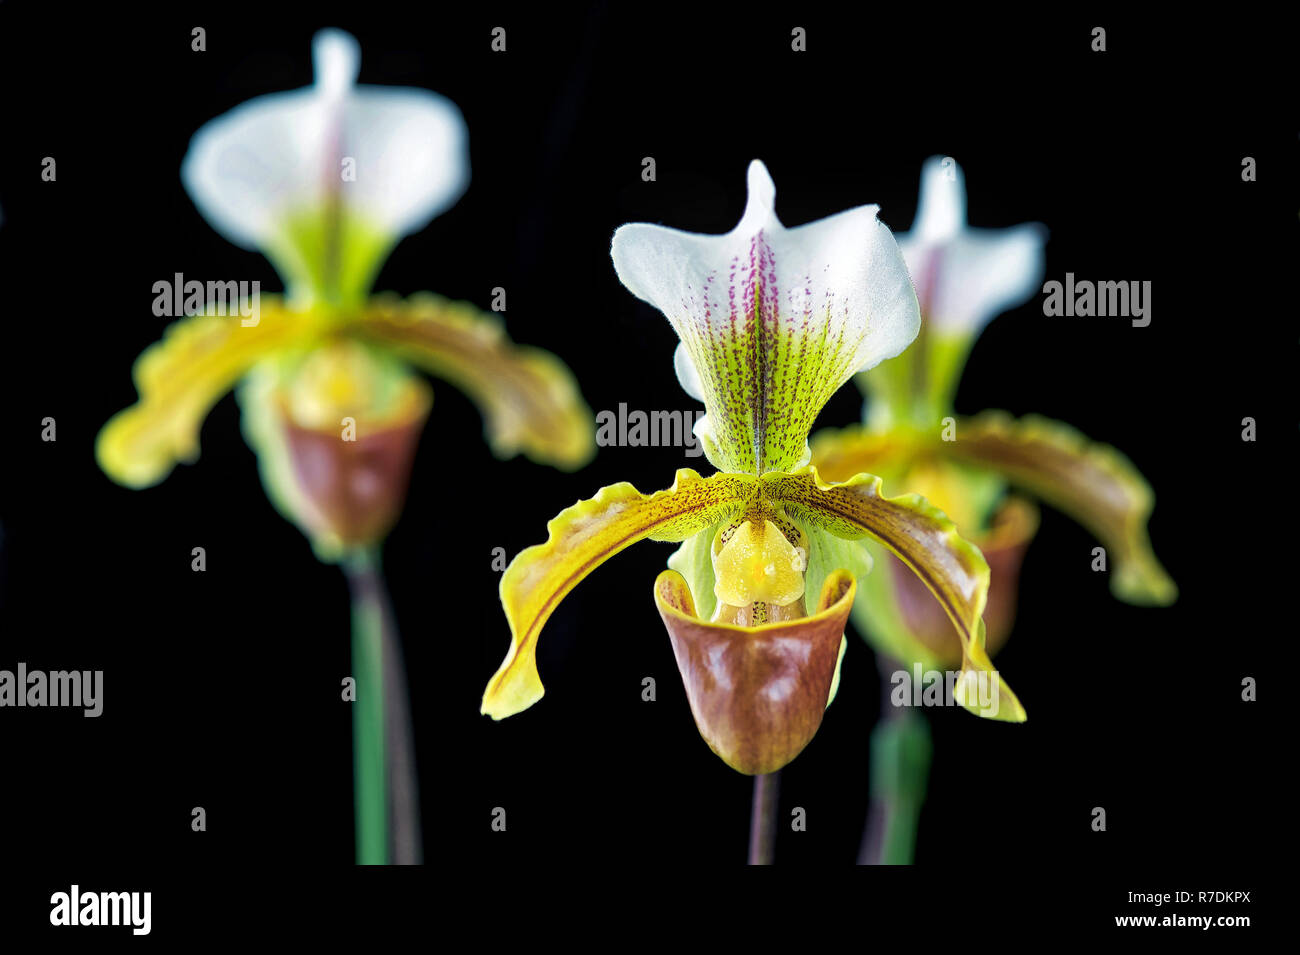 Paphiopedilum leeanum orchid flower Stock Photo